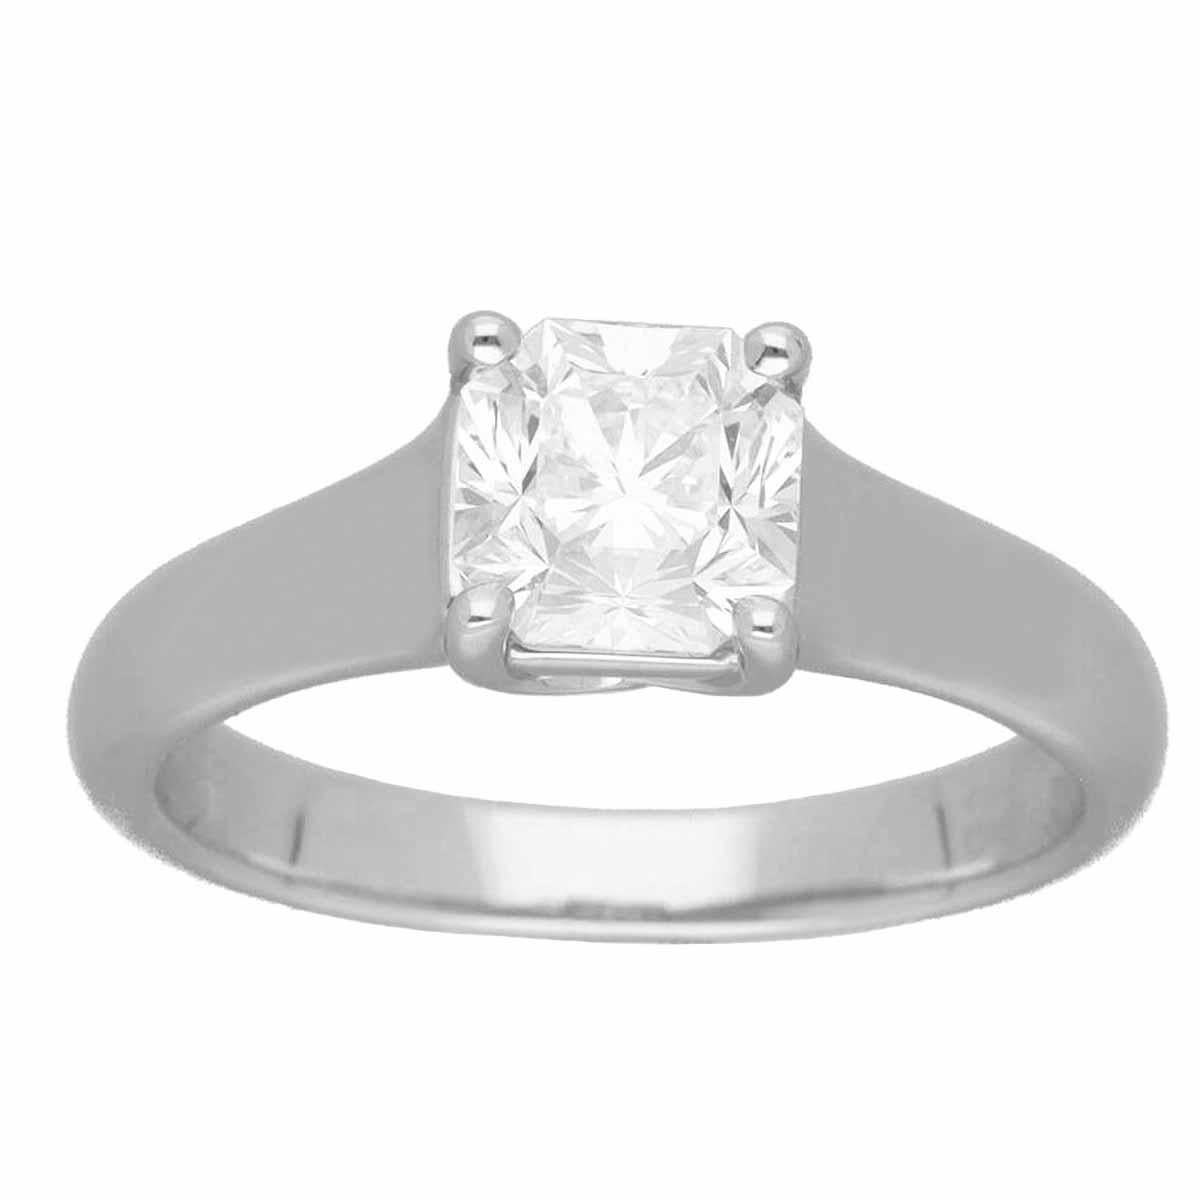 Marke:TIFFANY&Co
Name:Lucida Diamantring
Material:1P Diamant (0,93ct E-VS1), Pt950 Platin
Wird geliefert mit:Tiffany-Etui, Tiffany-Diamanten-Zertifikat
Gewicht:5.1g（ungefähr)
Ringgröße:Britisch & Australisch:H 1/2  /   US & Kanada:4 1/4 / 